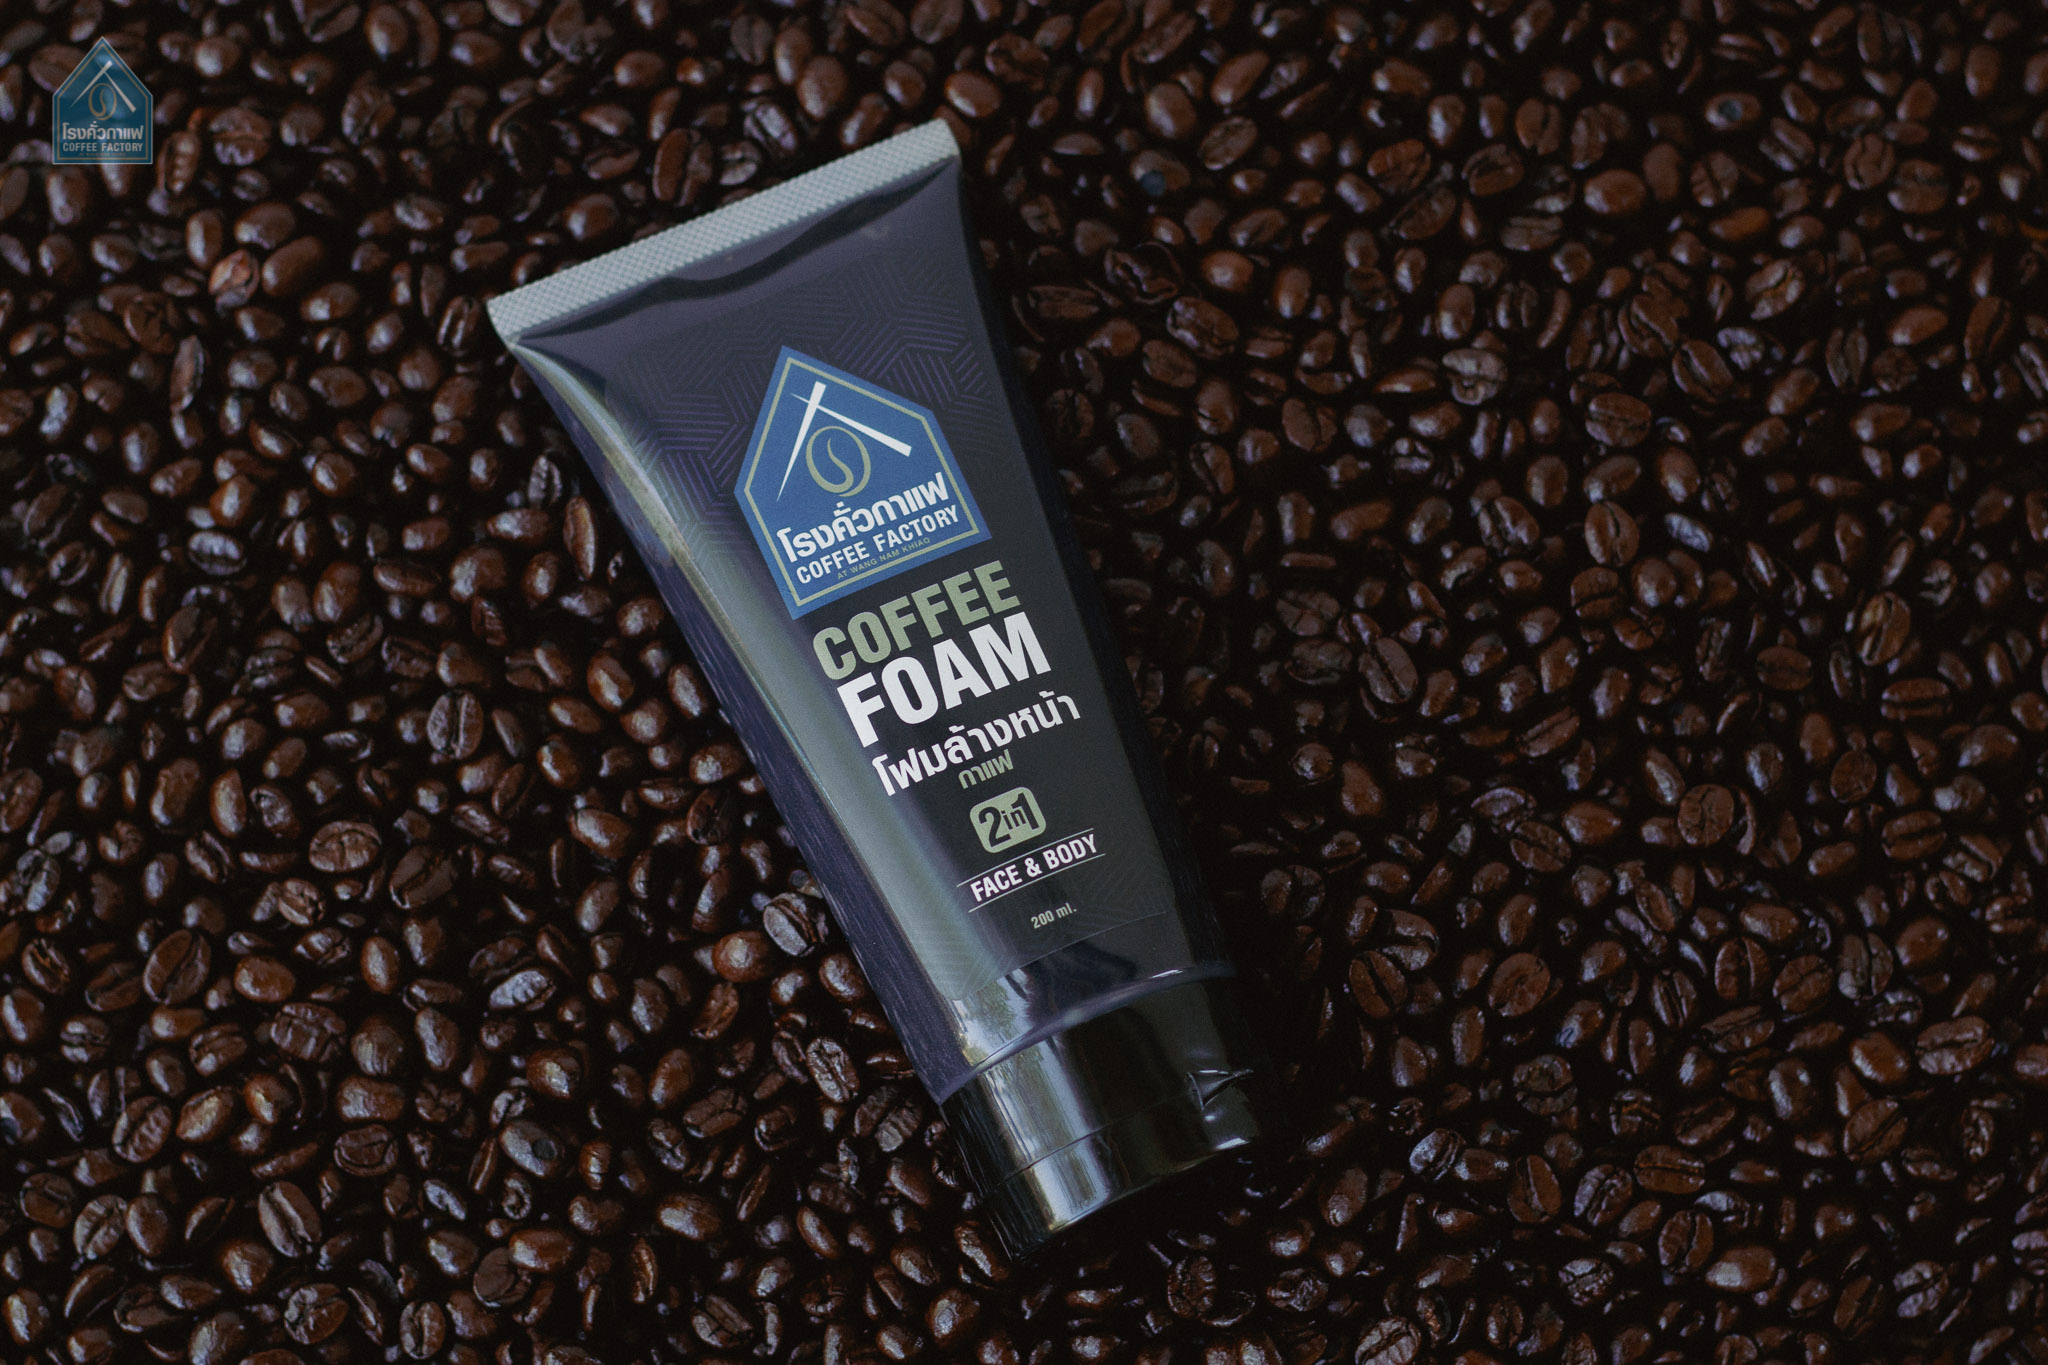 โฟม-สครับกาแฟ (หน้า และ ตัว) COFFEE FACTORY Coffee Foam Scrub Face&Body 200ML. 2 in 1